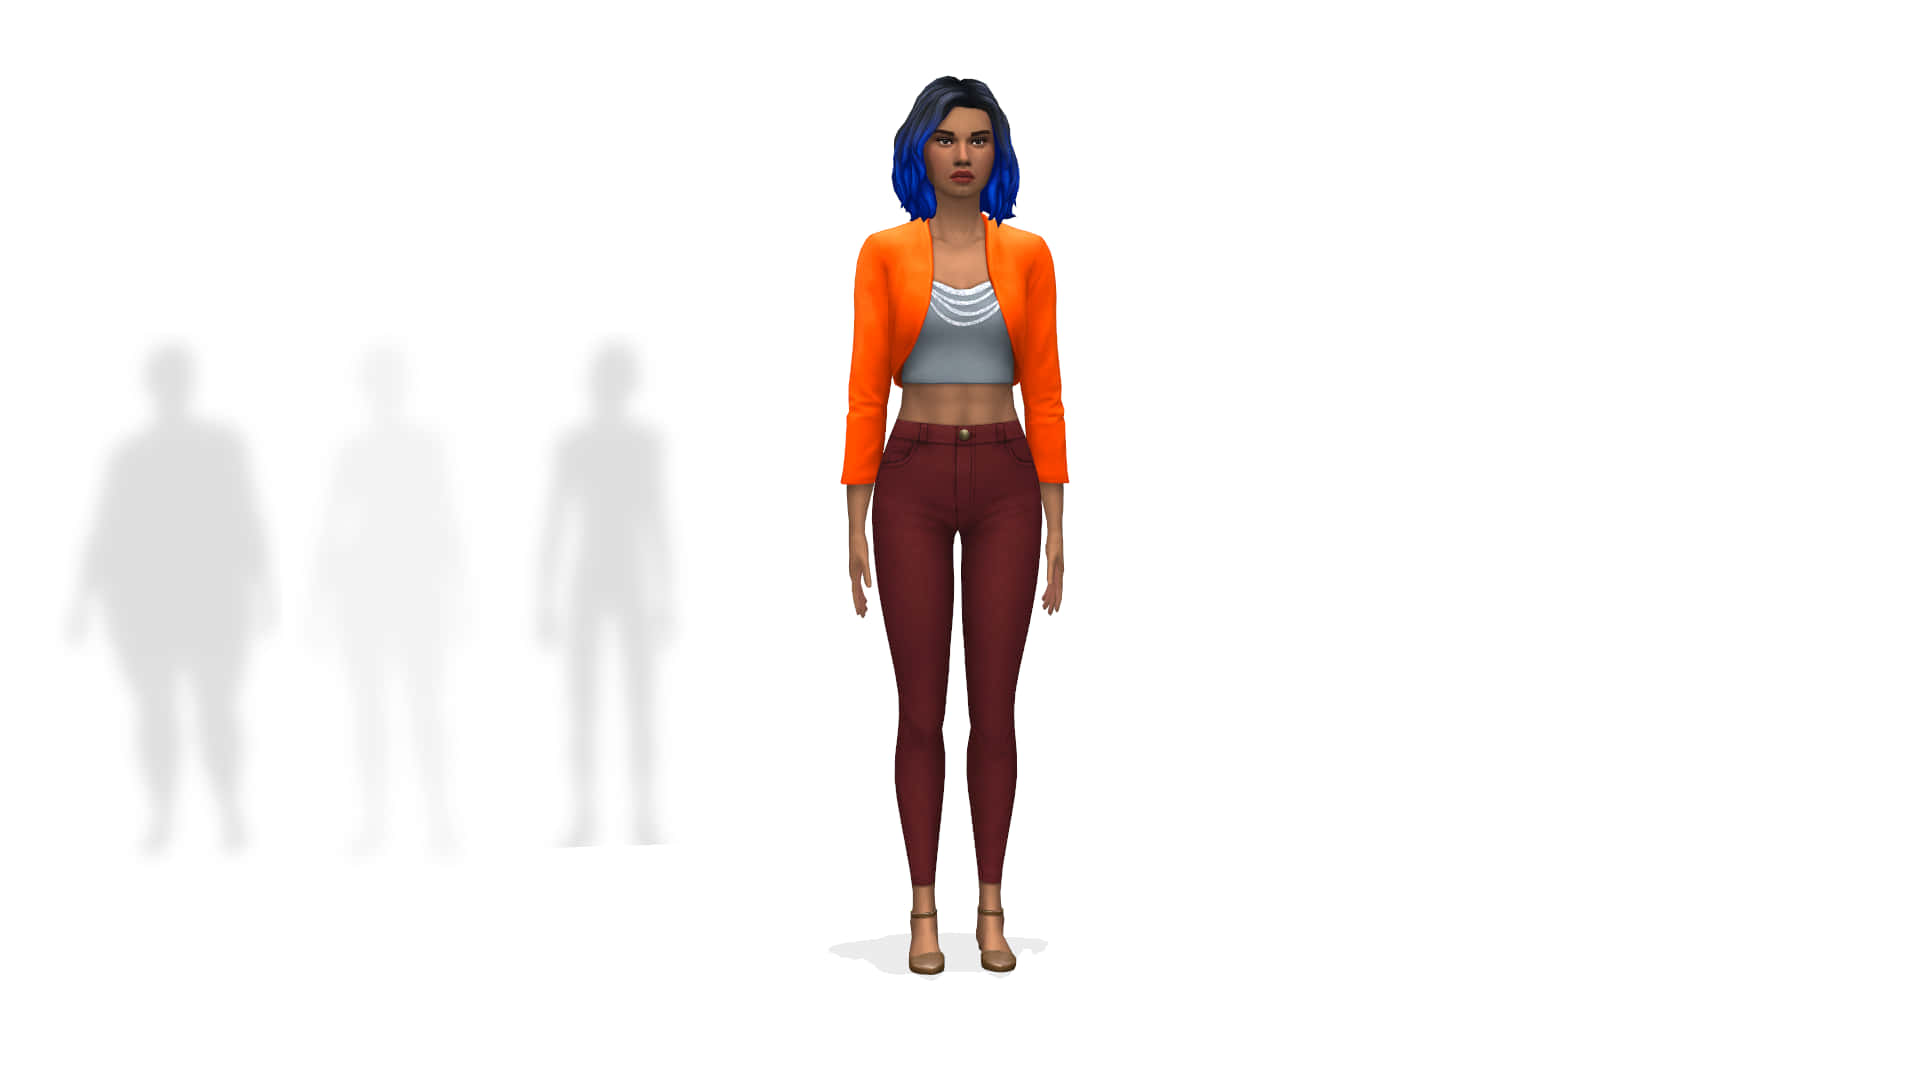 Sozialessimulationsspiel Sims 4 Cas Hintergrund